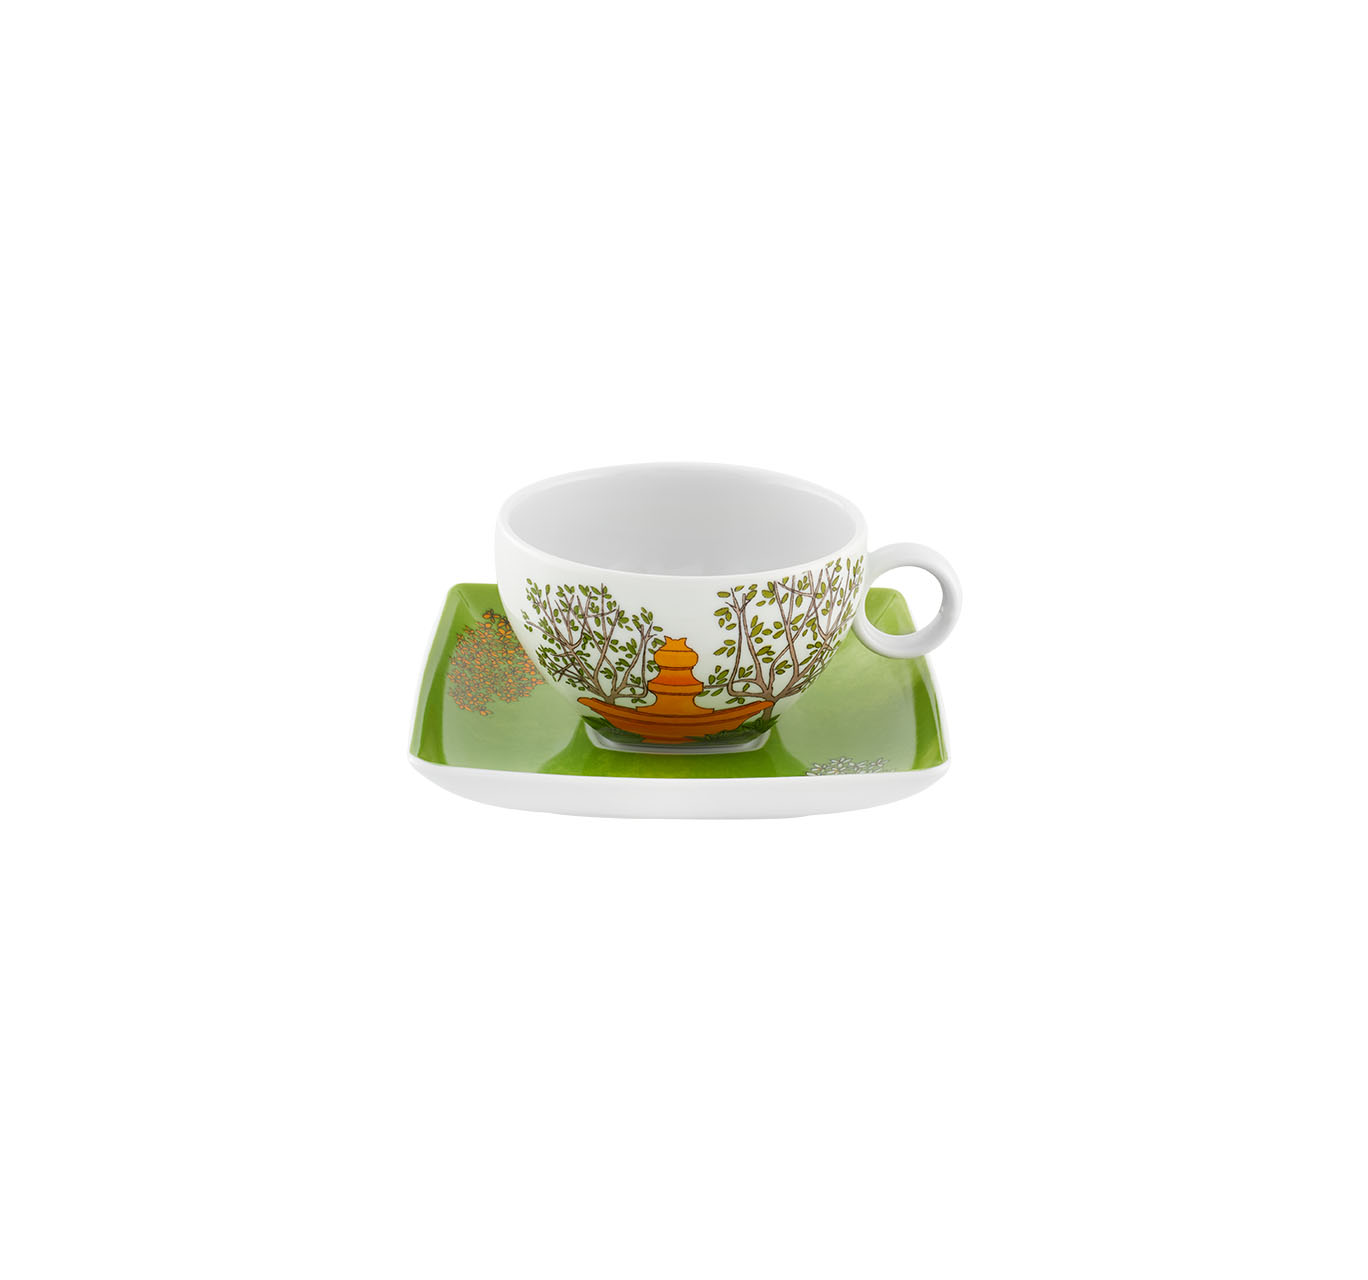 Jogo de chá com padrão floral e chávena com pires.